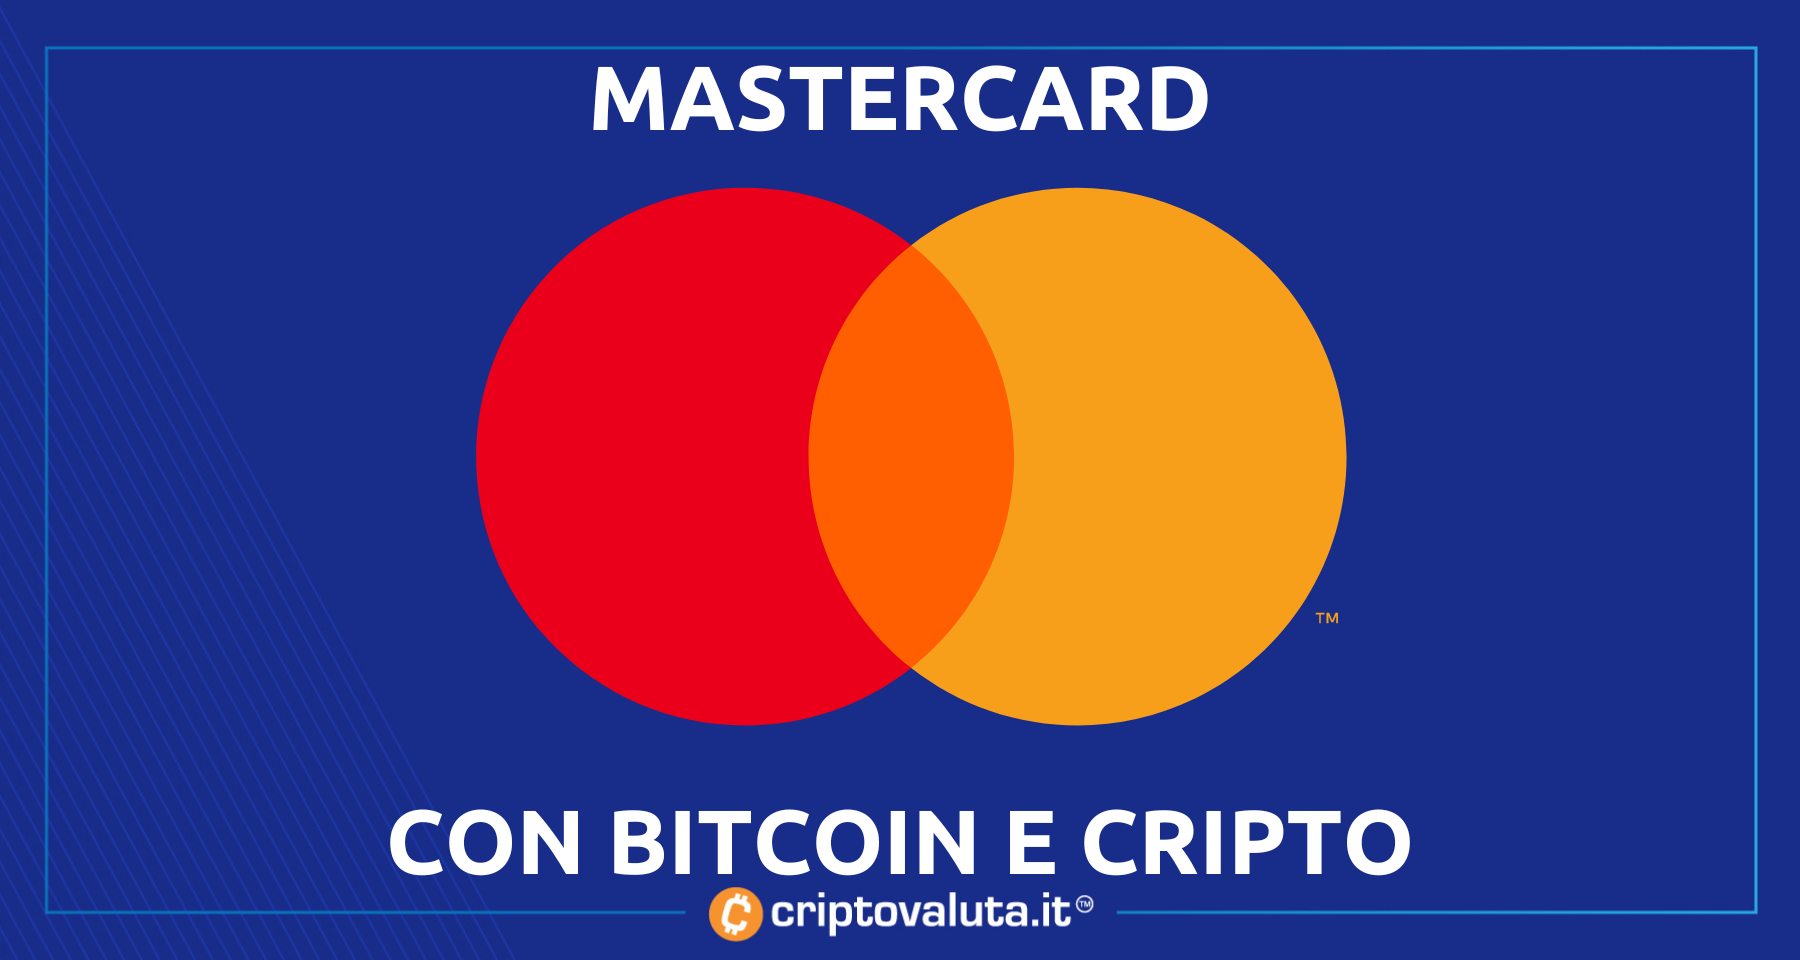 Bitcoin e crypto, parla Mastercard! | “Rampa per nuova categoria di asset”